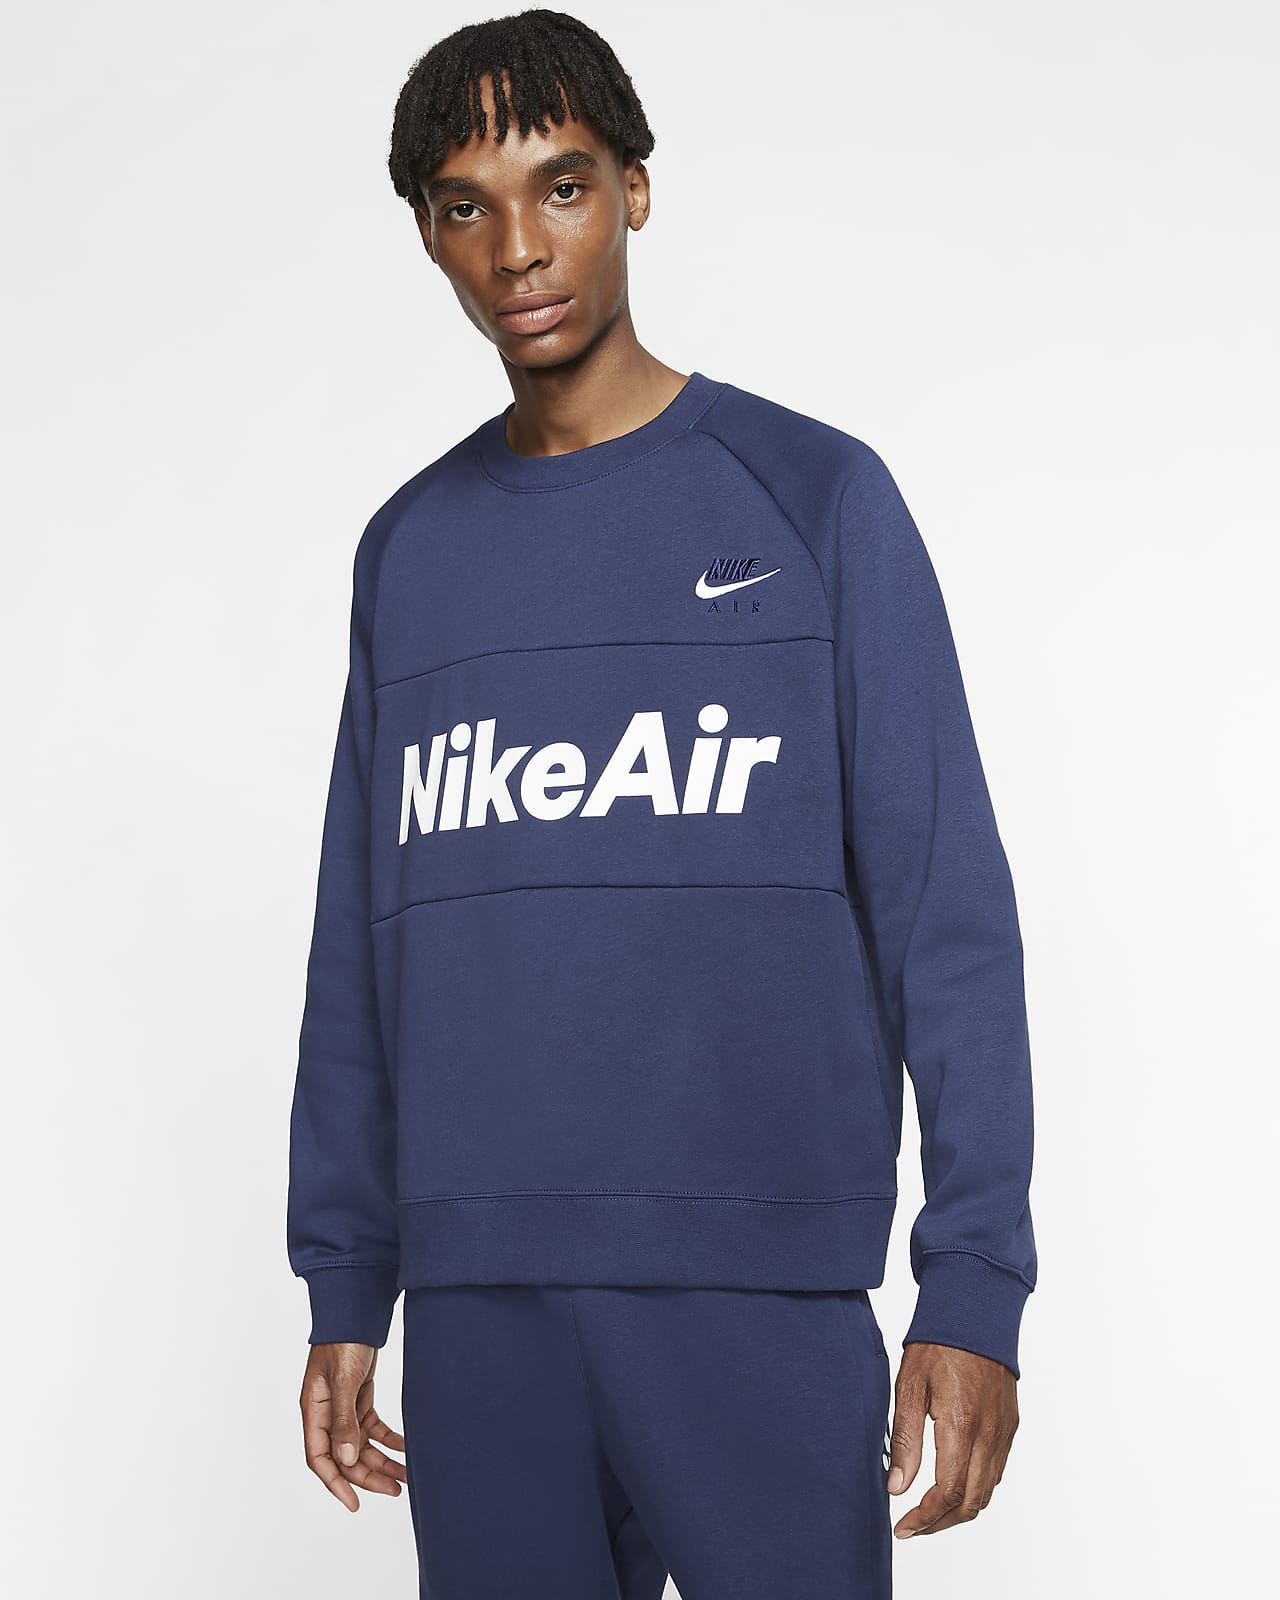 Nike Air Men's Fleece Crew. Nike AT